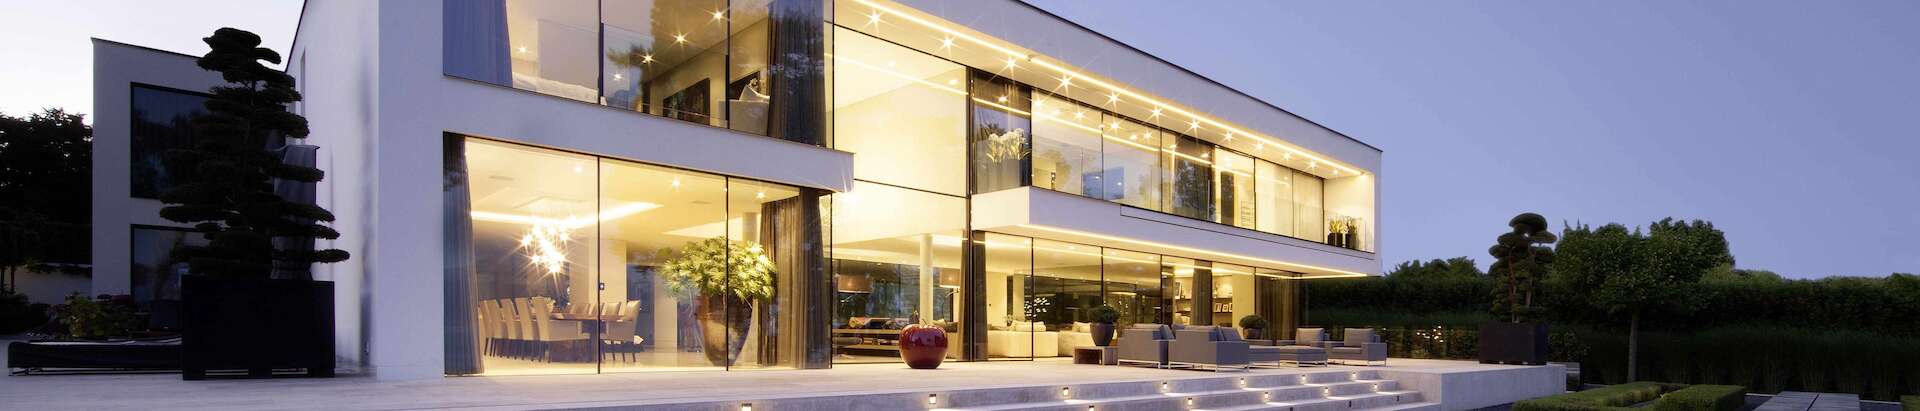 Villa moderne avec fenêtres coulissantes offrant une sécurité maximale